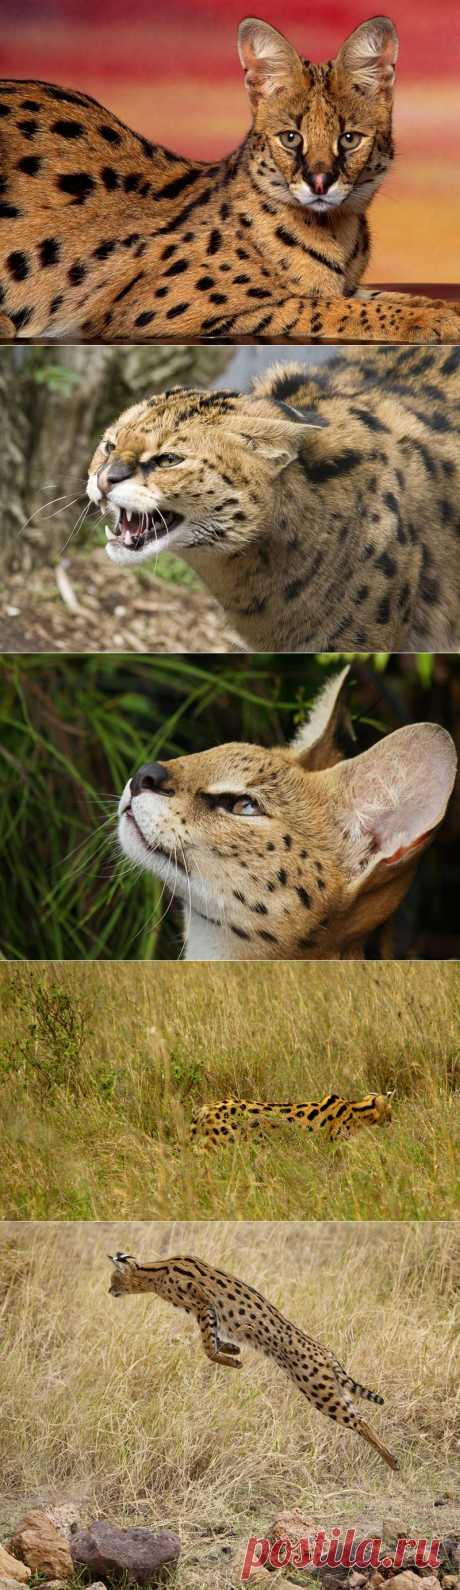 Сервал (Leptailurus serval) или кустарниковая кошка | В мире интересного